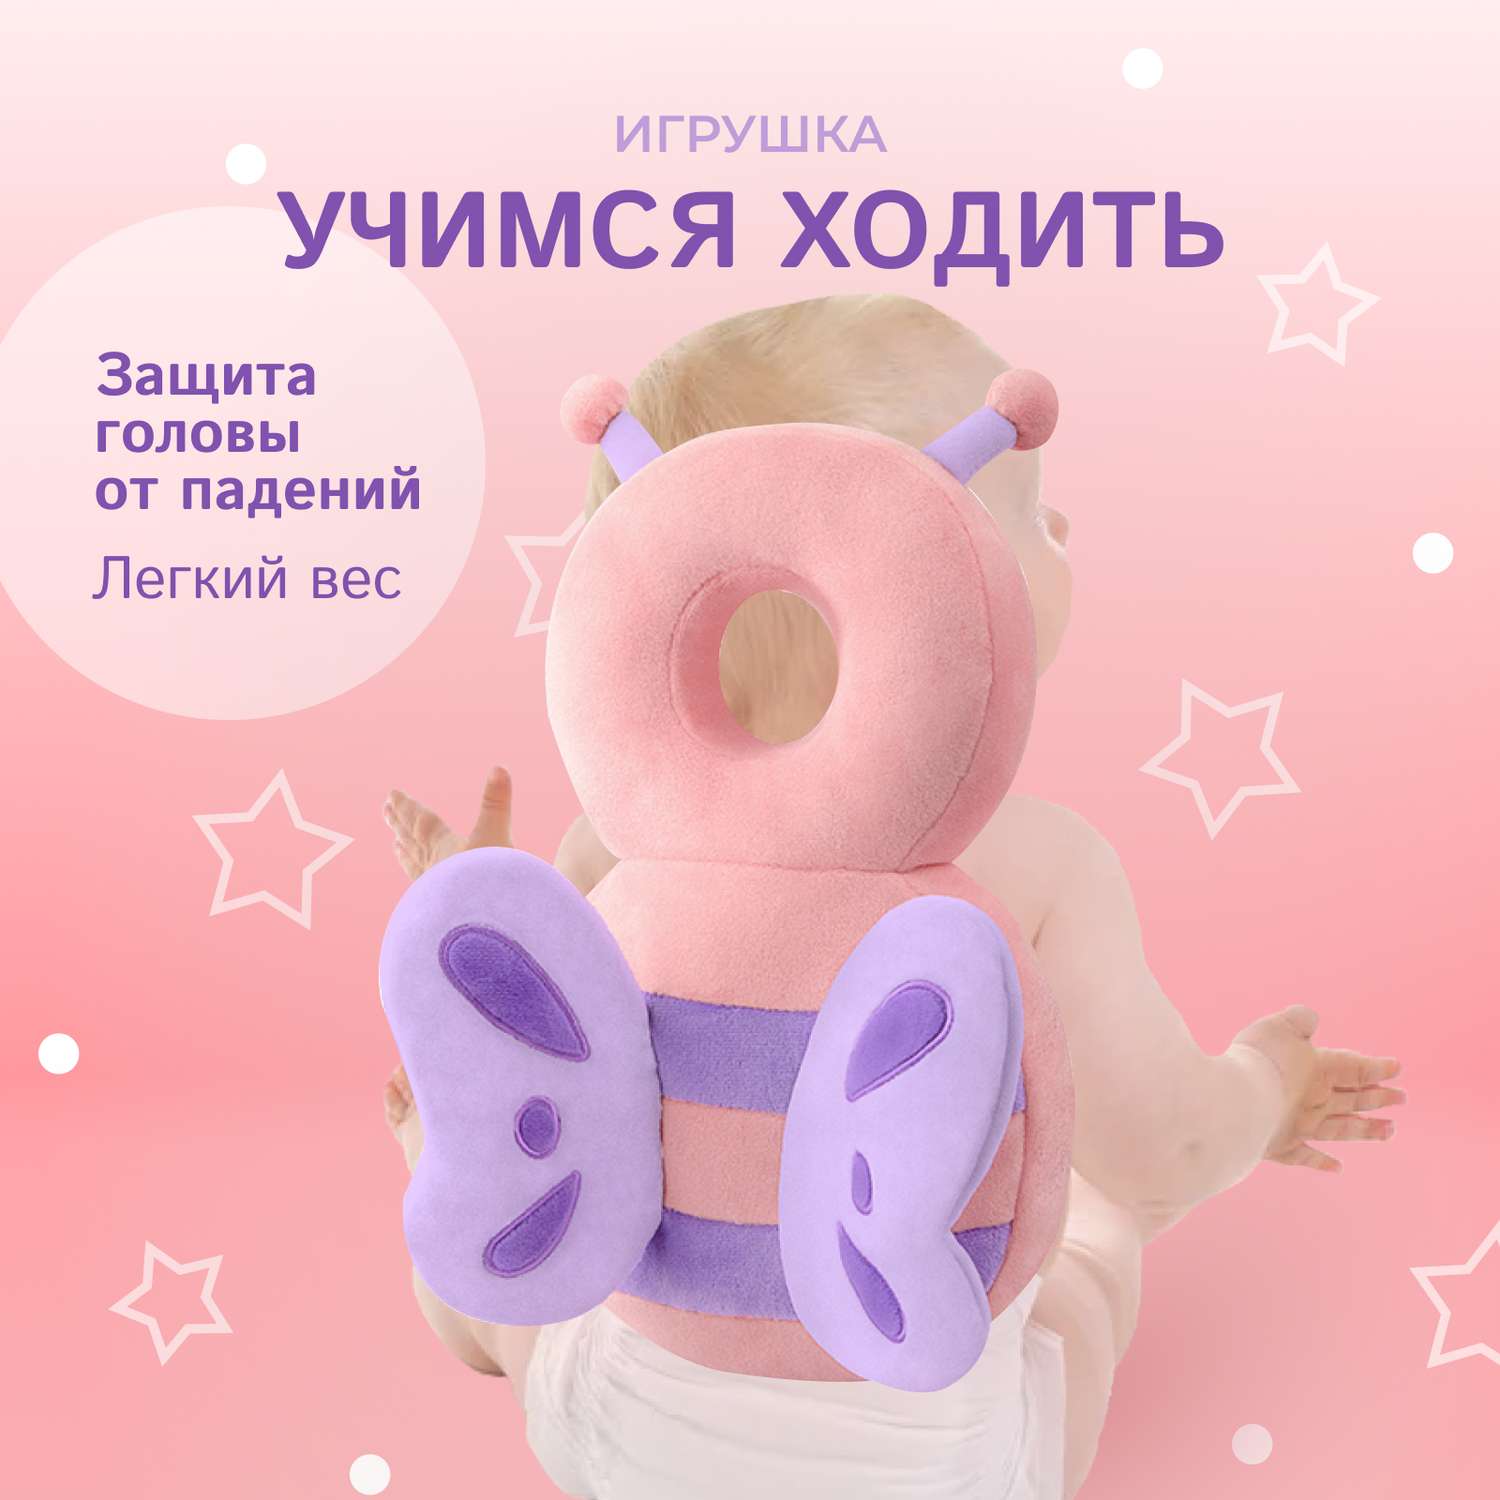 Защита для головы малыша Solmax защитная подушка-рюкзачок для ребенка - фото 1